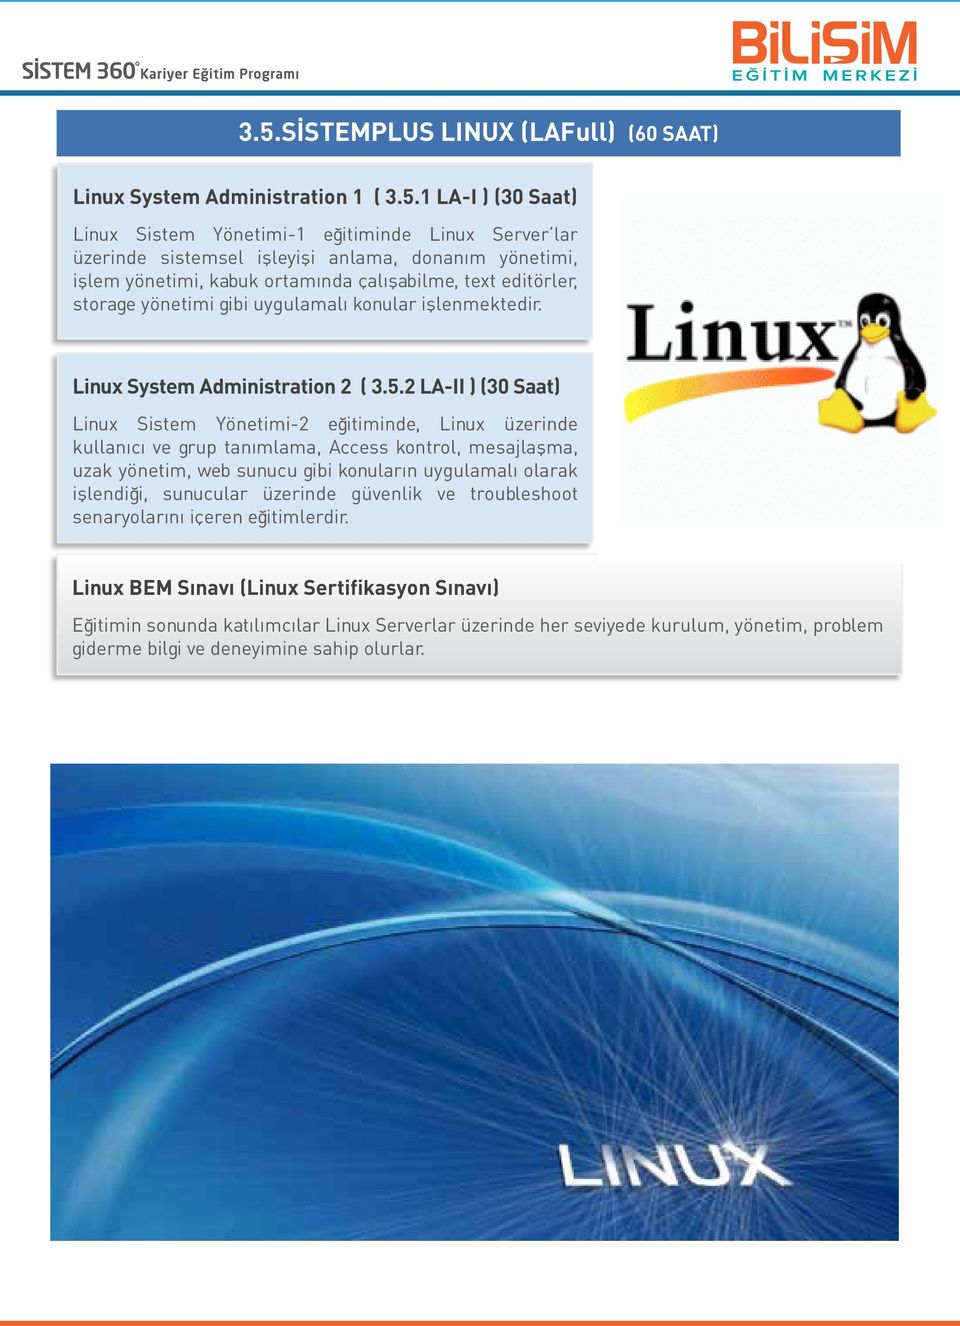 2 LA-II ) (30 Saat) Linux Sistem Yönetimi-2 eğitiminde, Linux üzerinde kullanıcı ve grup tanımlama, Access kontrol, mesajlaşma, uzak yönetim, web sunucu gibi konuların uygulamalı olarak işlendiği,